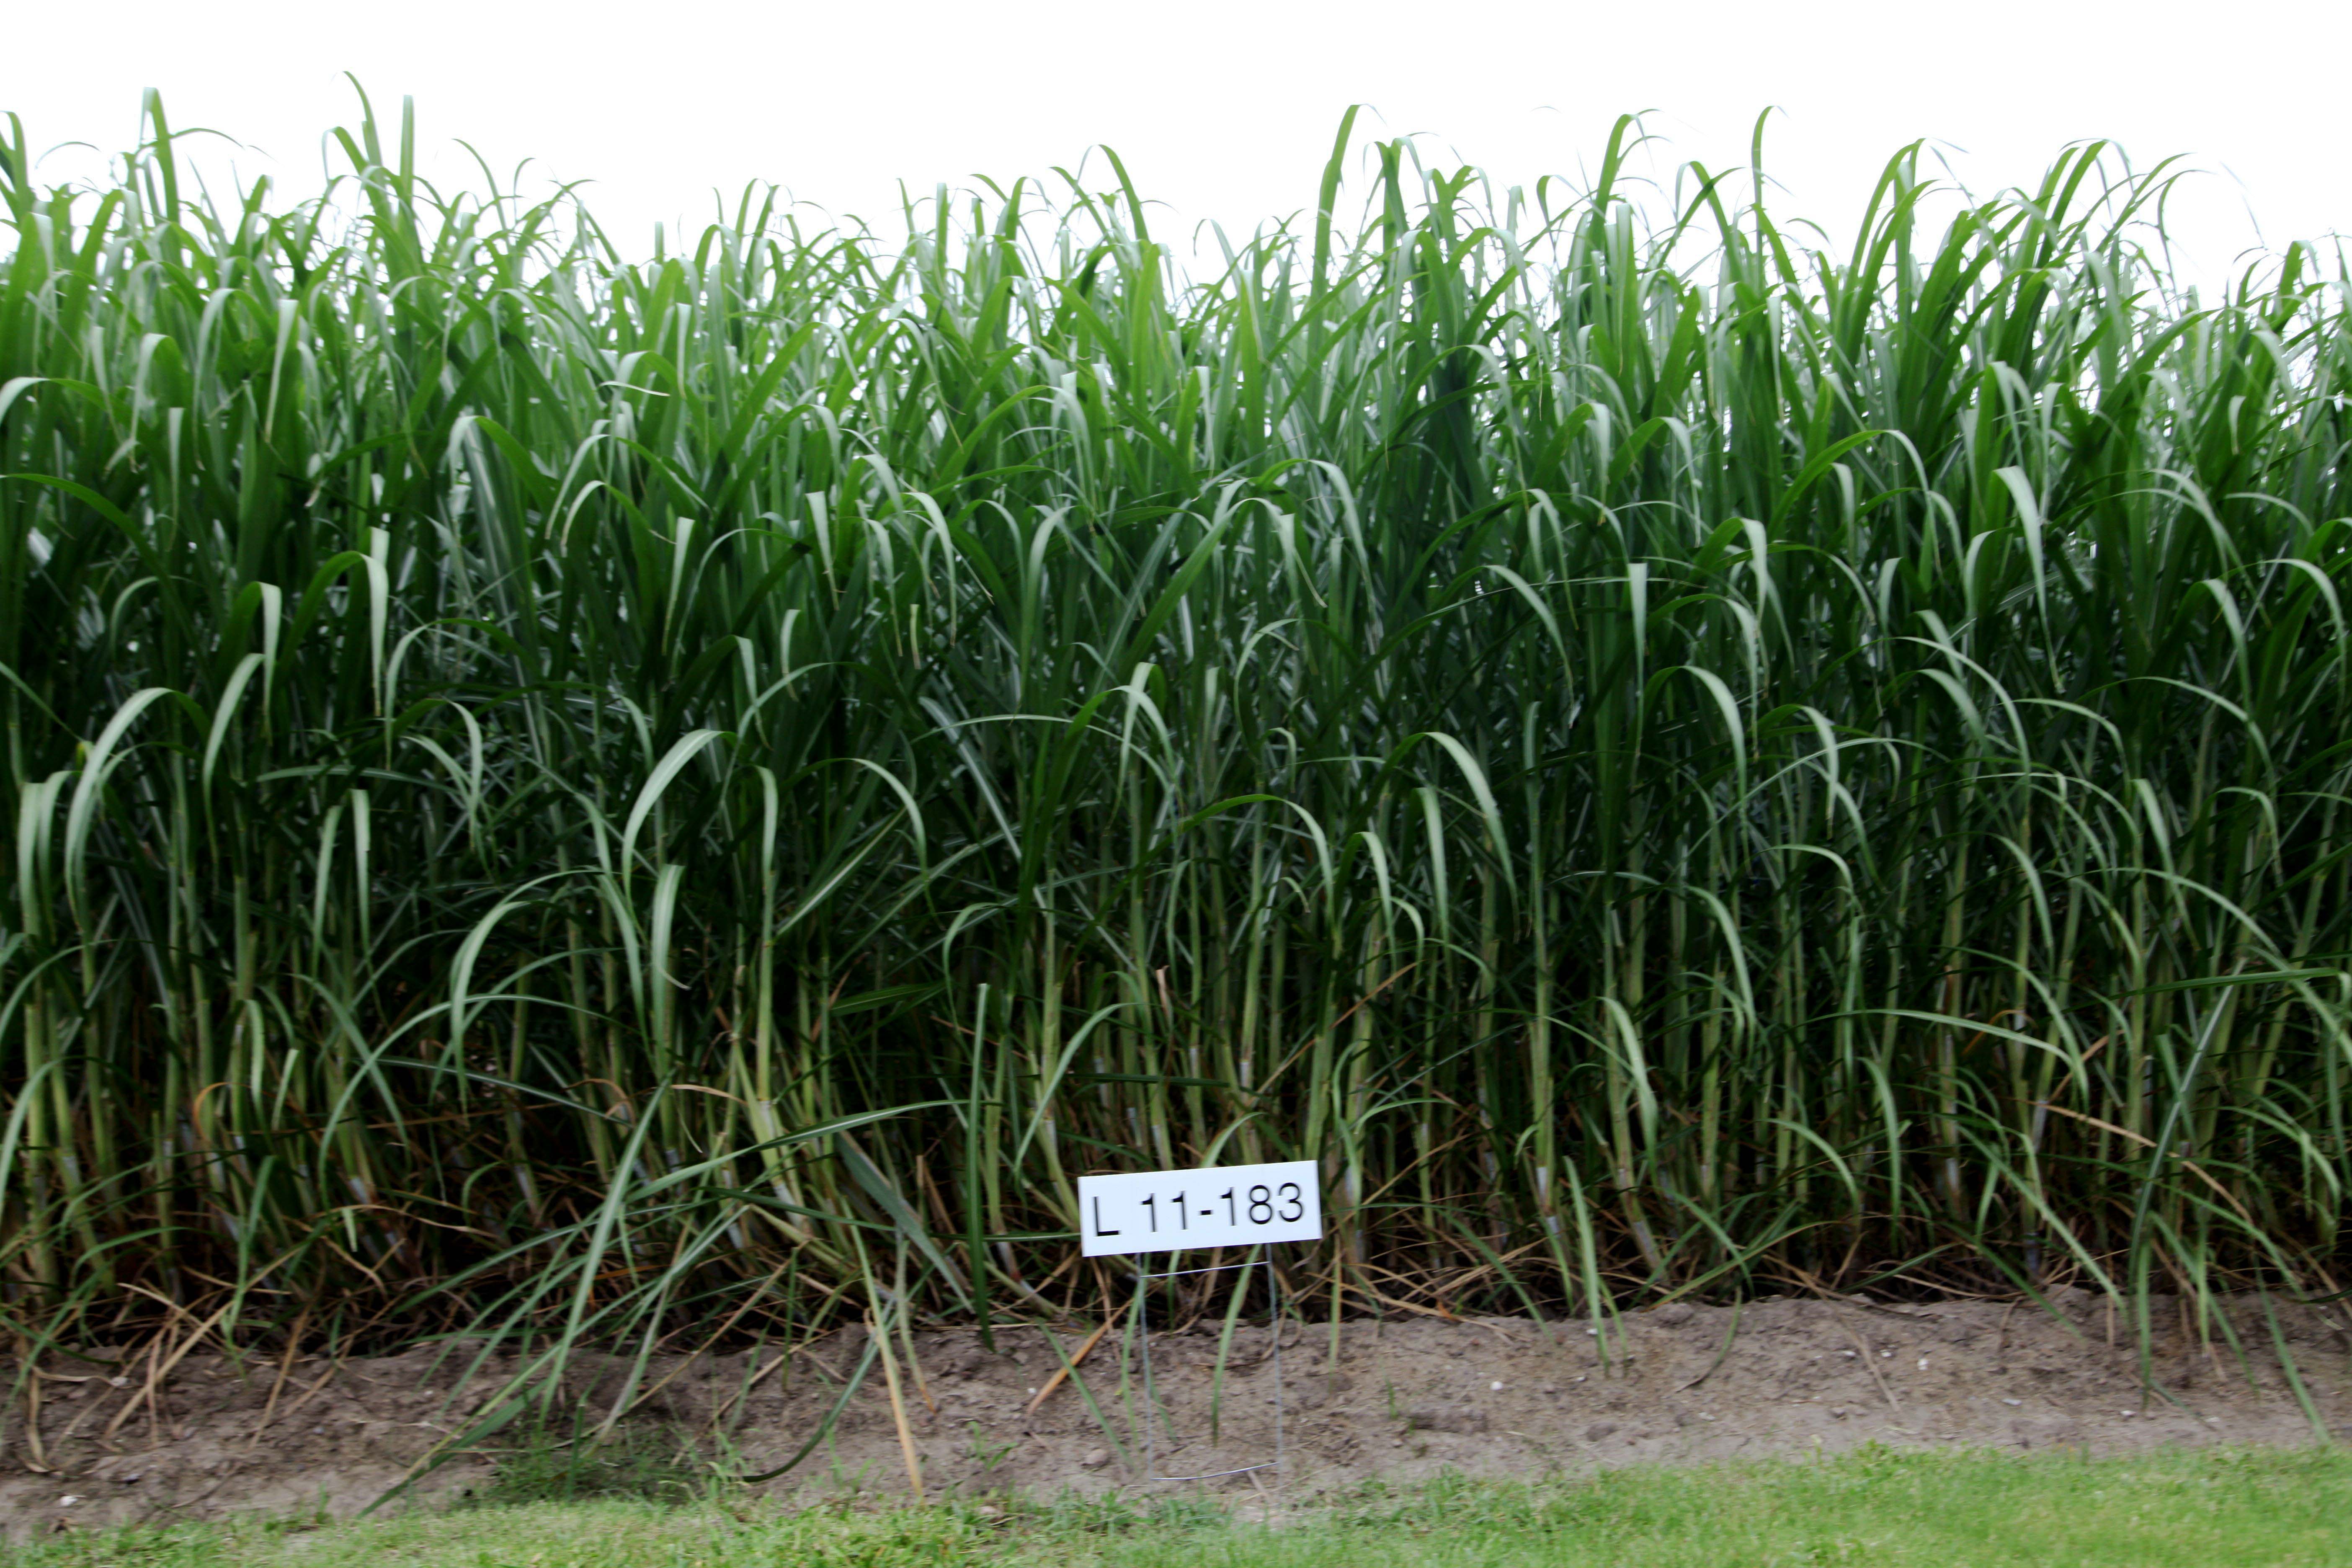 L 11-183 sugarcane variety